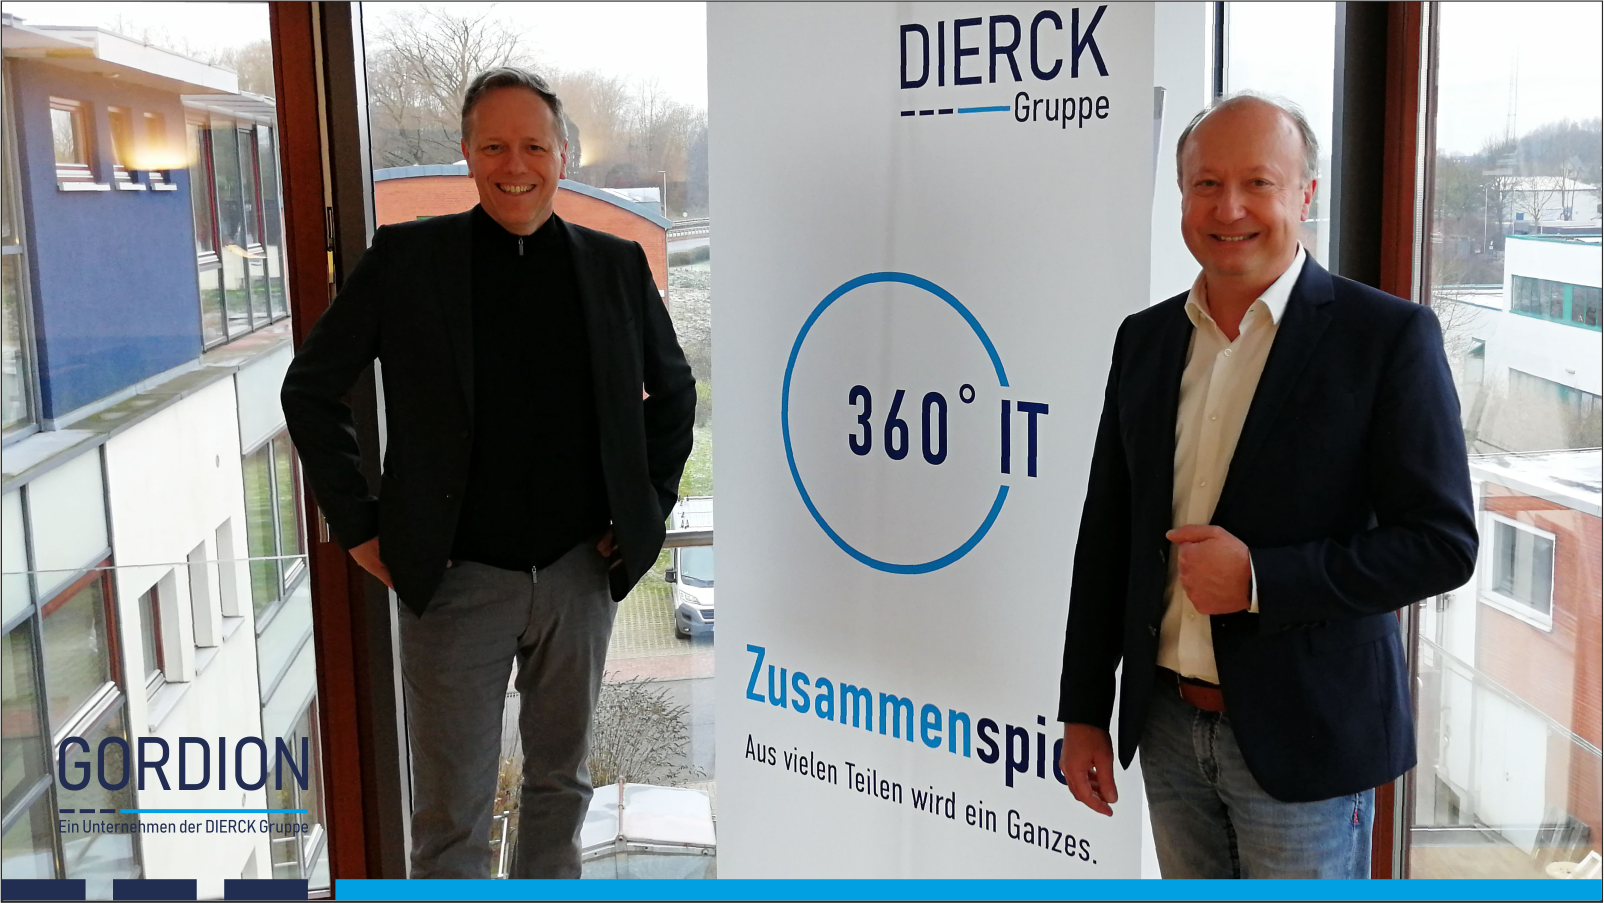 GORDION ist seit 1.1.2022 Teil der DIERCK Gruppe. Die Geschäftsführer Wolfgang Ehrk (DIERCK-Gruppe) und Oliver Lindlar (GORDION, links) freuen sich über den Zusammenschluss.